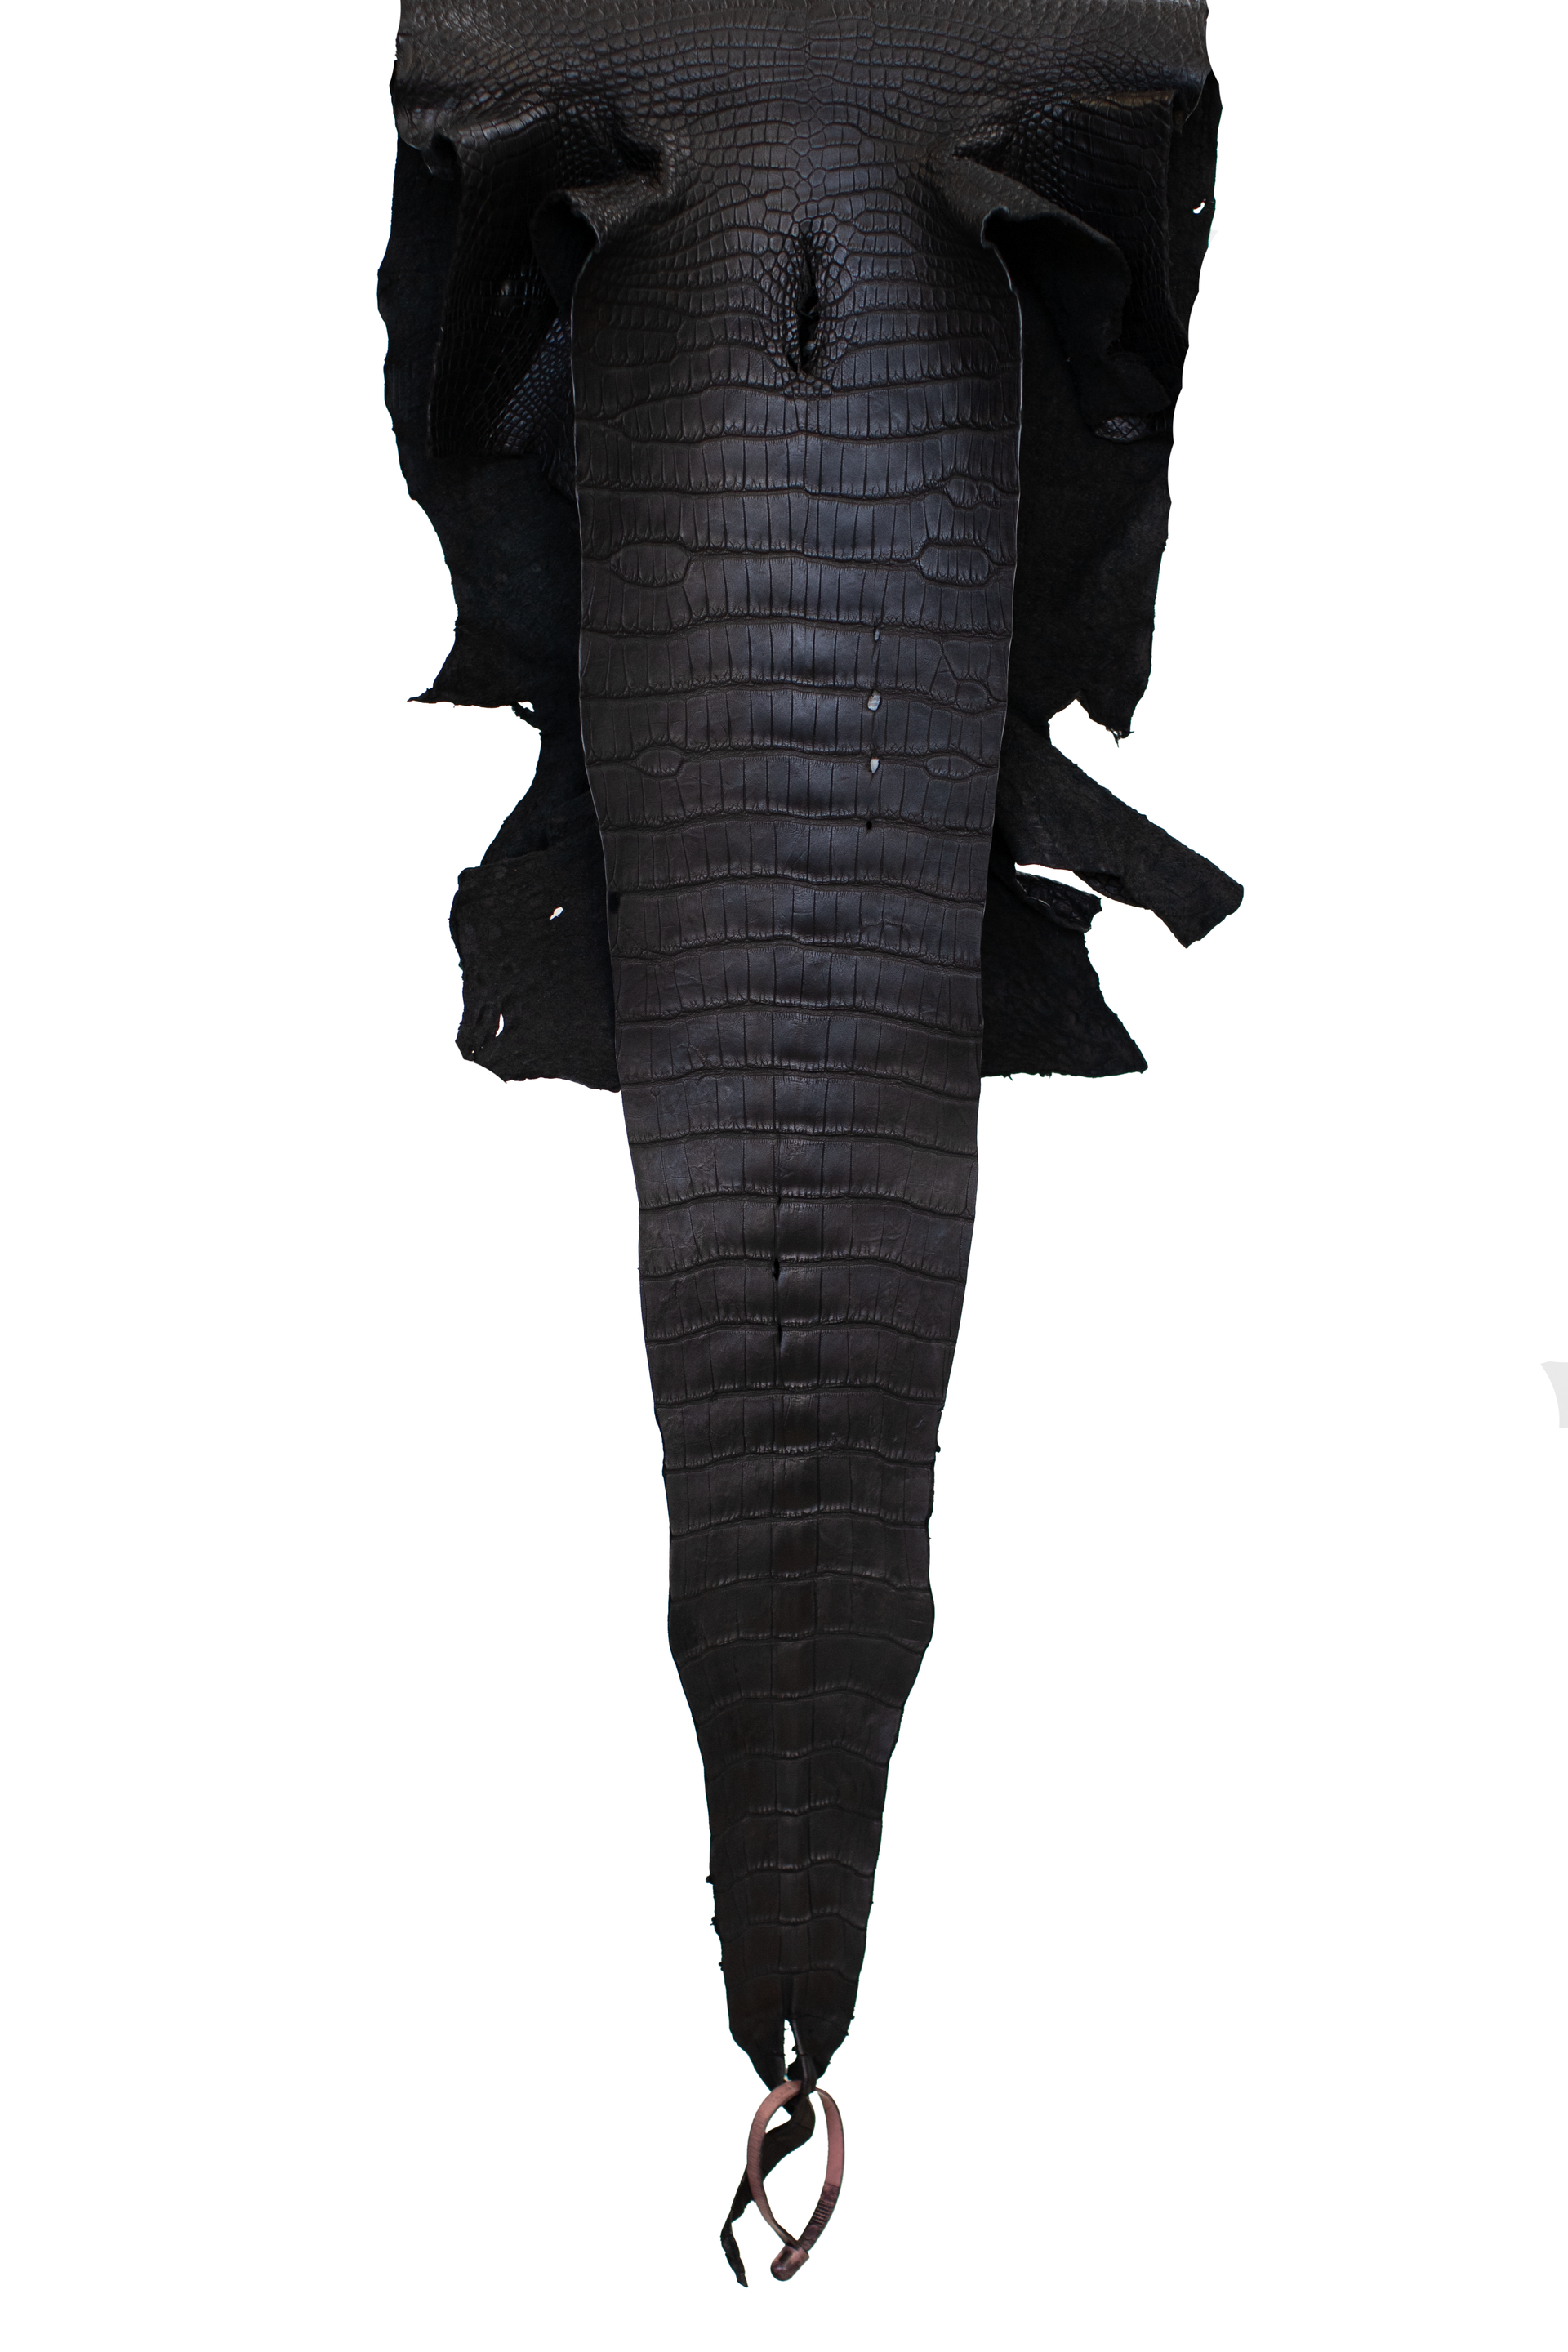 31 cm Grade 3/4 Black Matte Wild American Alligator Leather - Tag: LA21-0101403